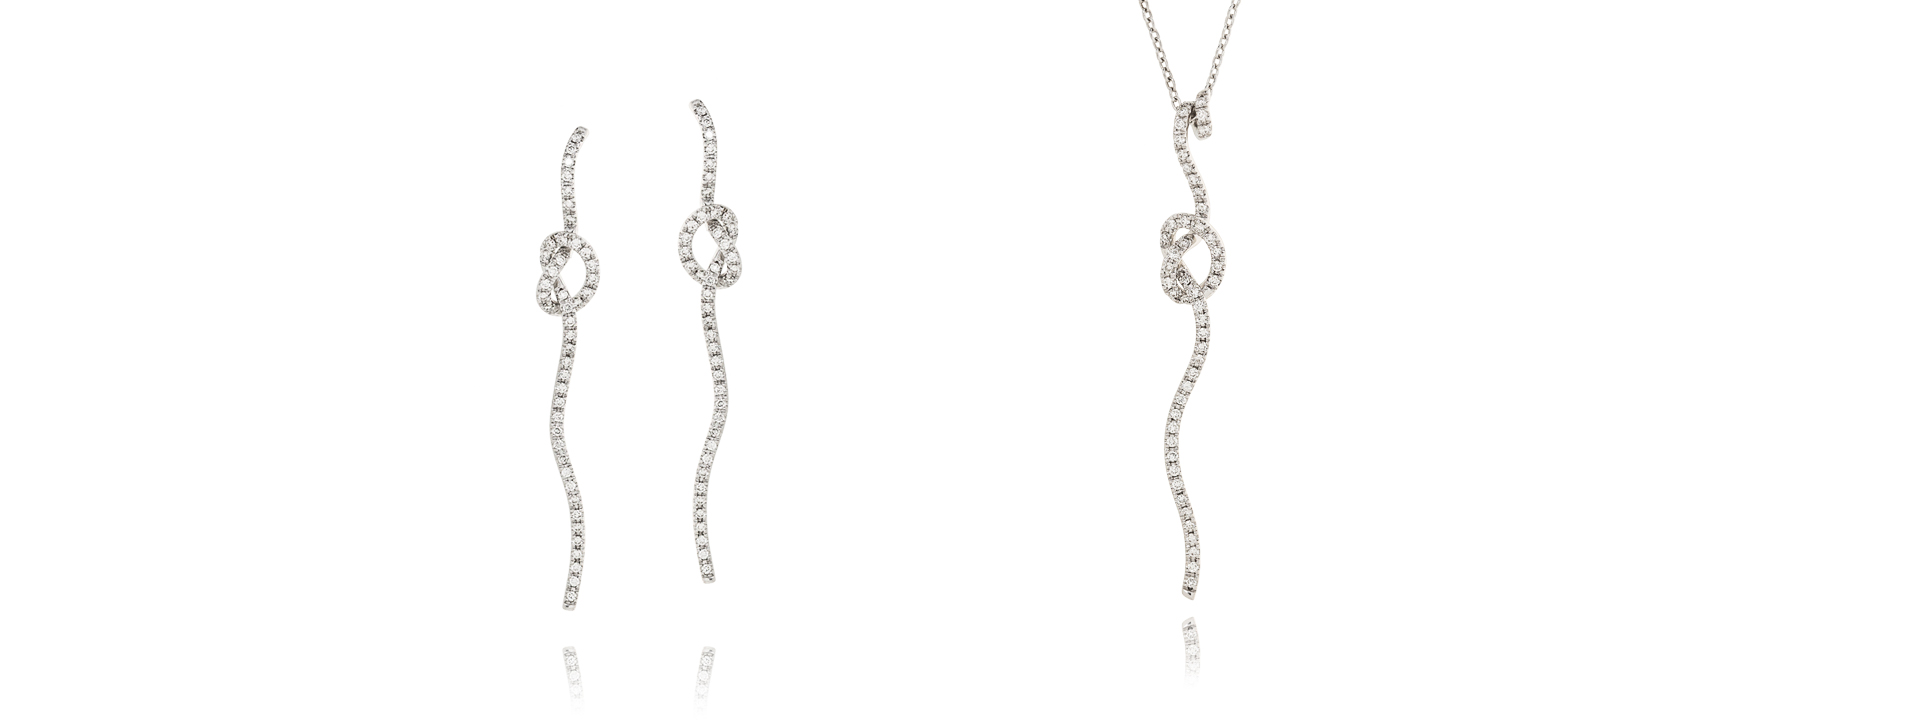 nastri pendant and earrings white gold 18 kt diamonds